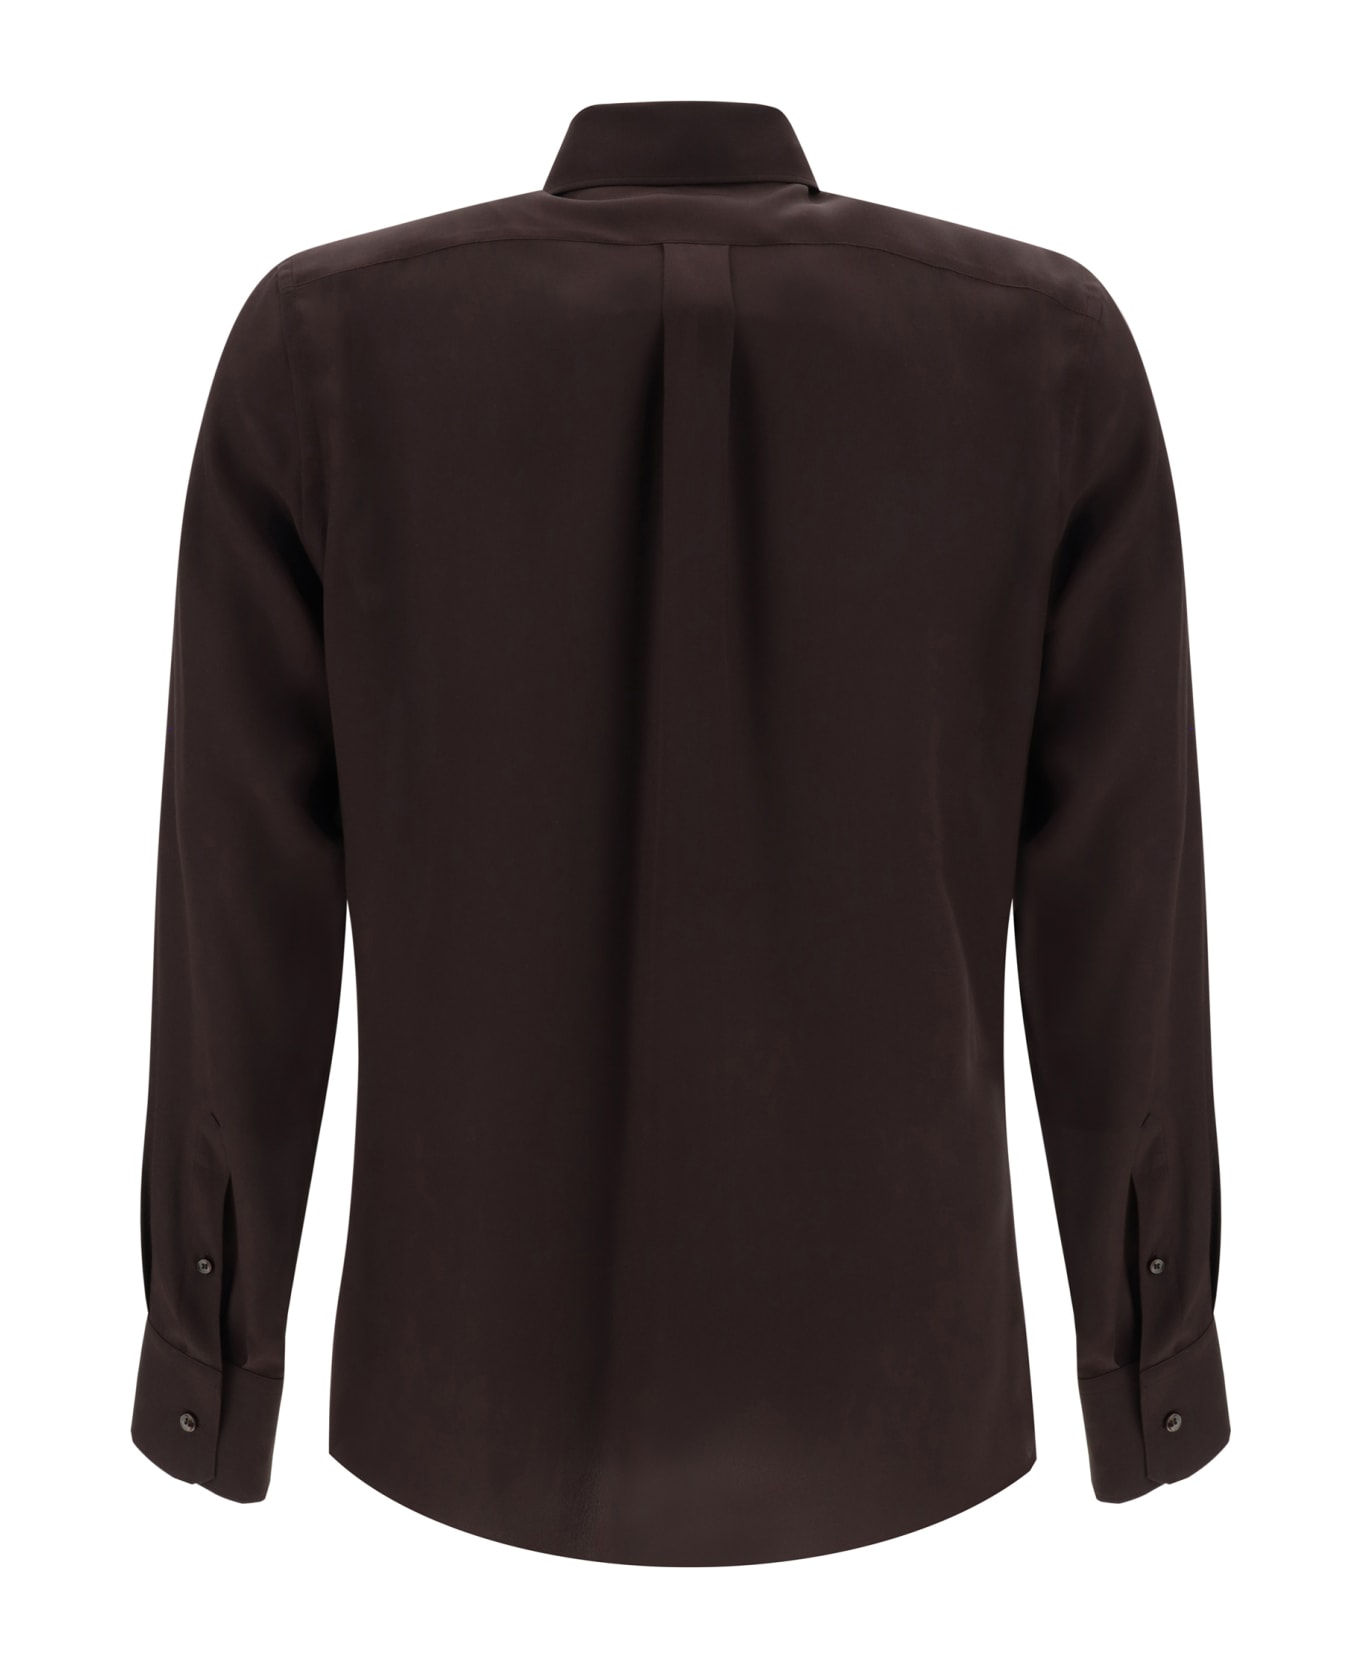 Dolce & Gabbana Silk Shirt - Marrone シャツ